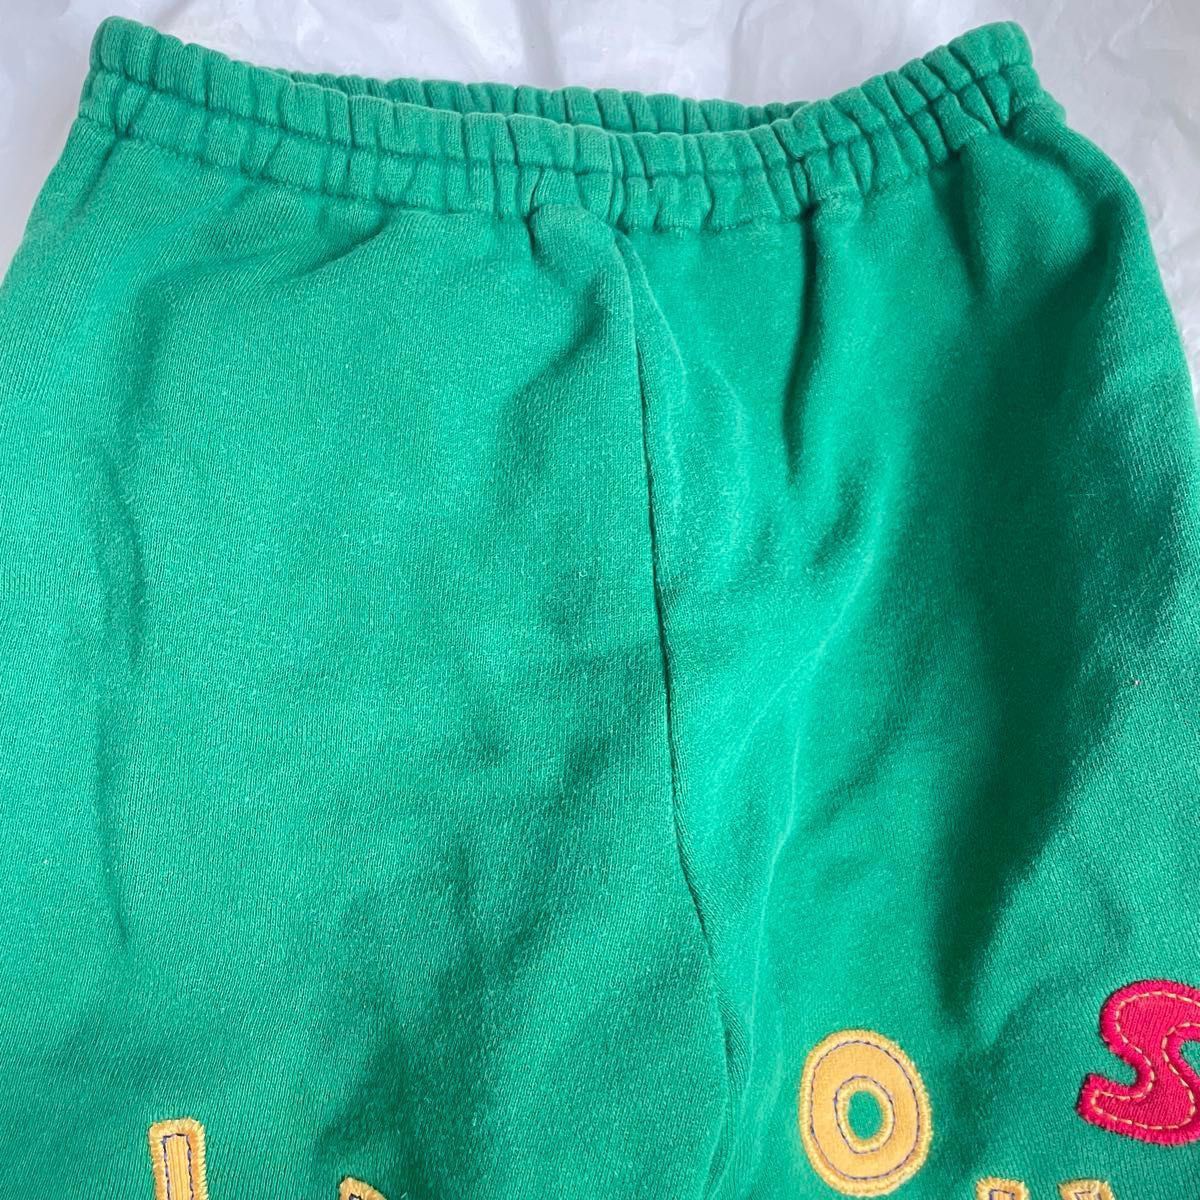 美品 オールド レトロ ミキハウス 日本製 ショート パンツ 110 綿100% 半ズボン ロゴ グリーン 緑